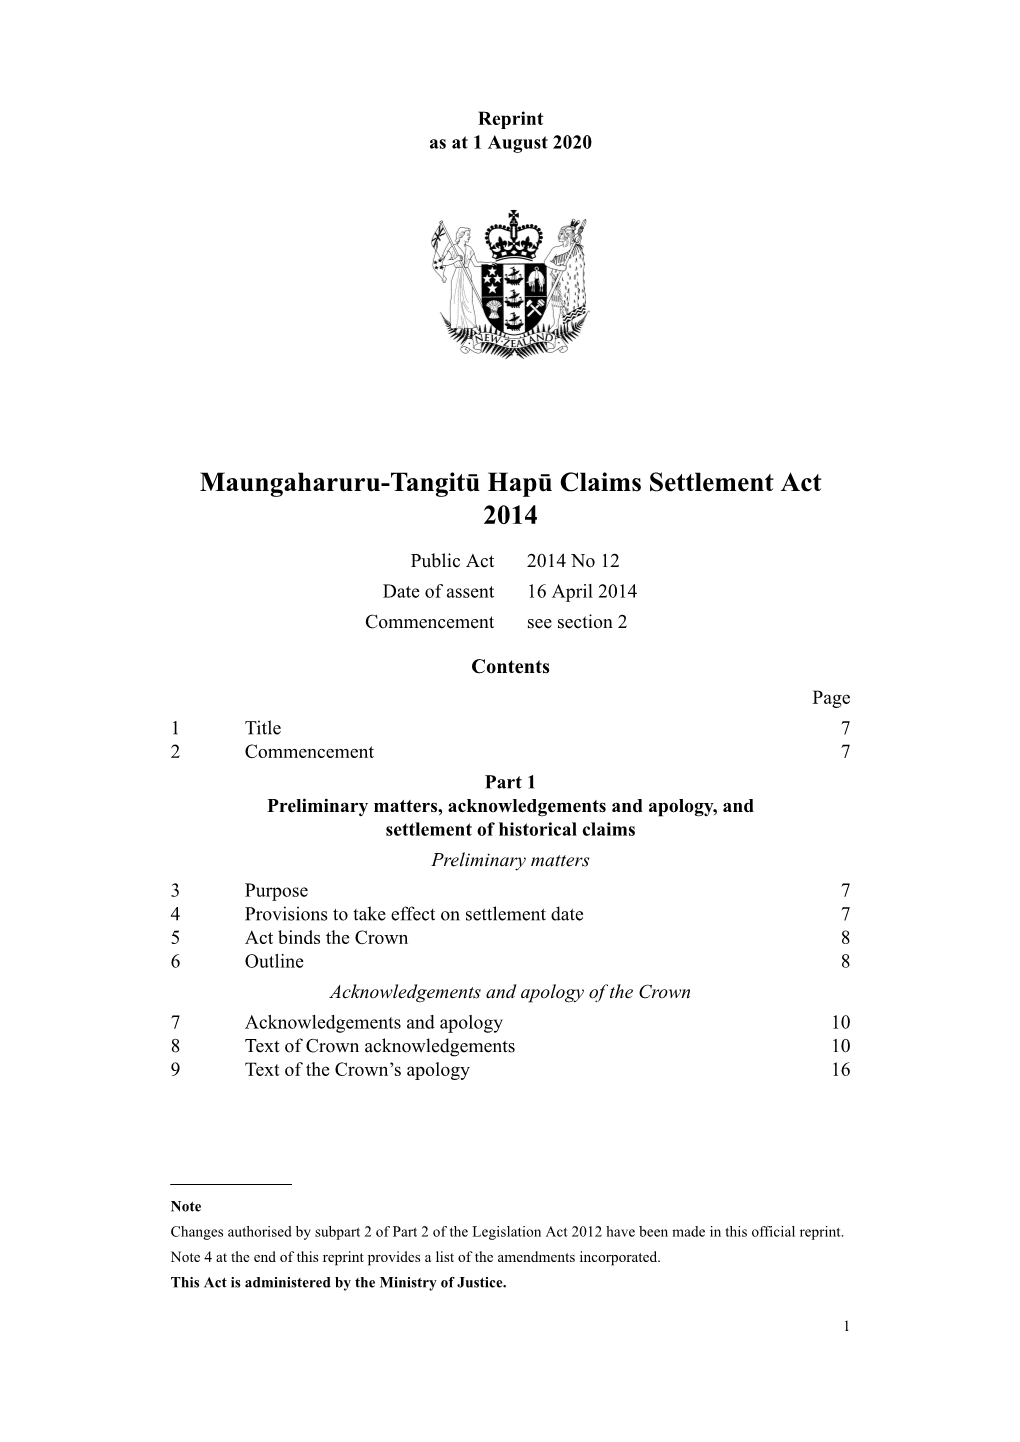 Maungaharuru-Tangitū Hapū Claims Settlement Act 2014